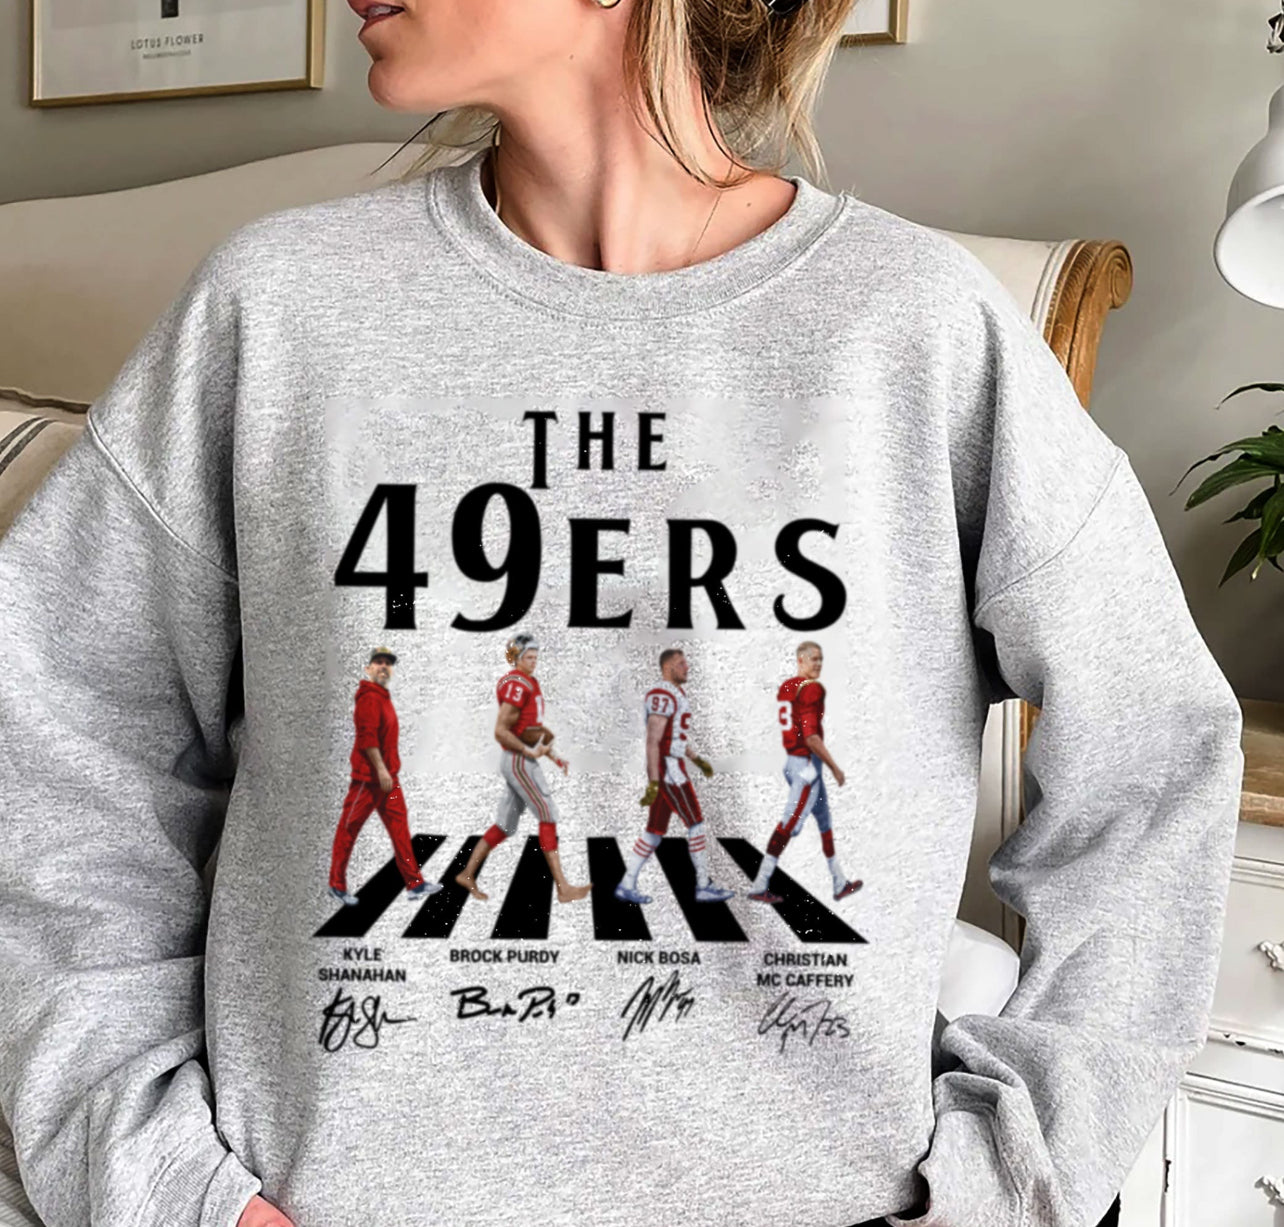 The 49ers sweatshirt